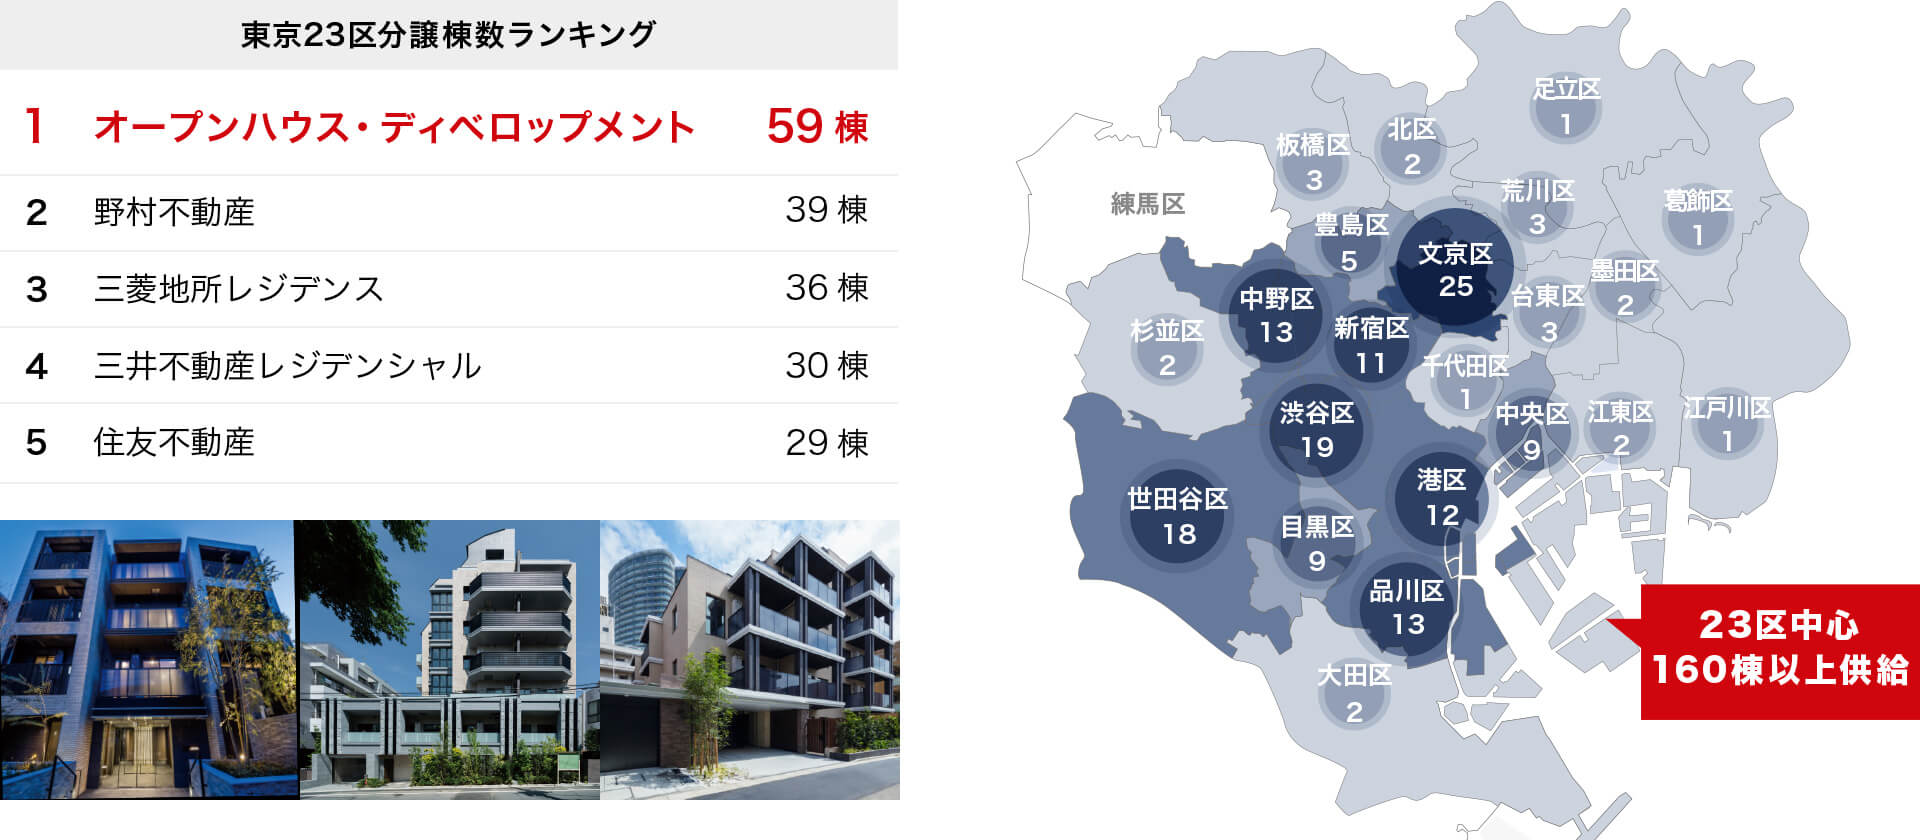 オープンハウス・ディベロップメントは3年累計 東京23区のマンション供給棟数No.1